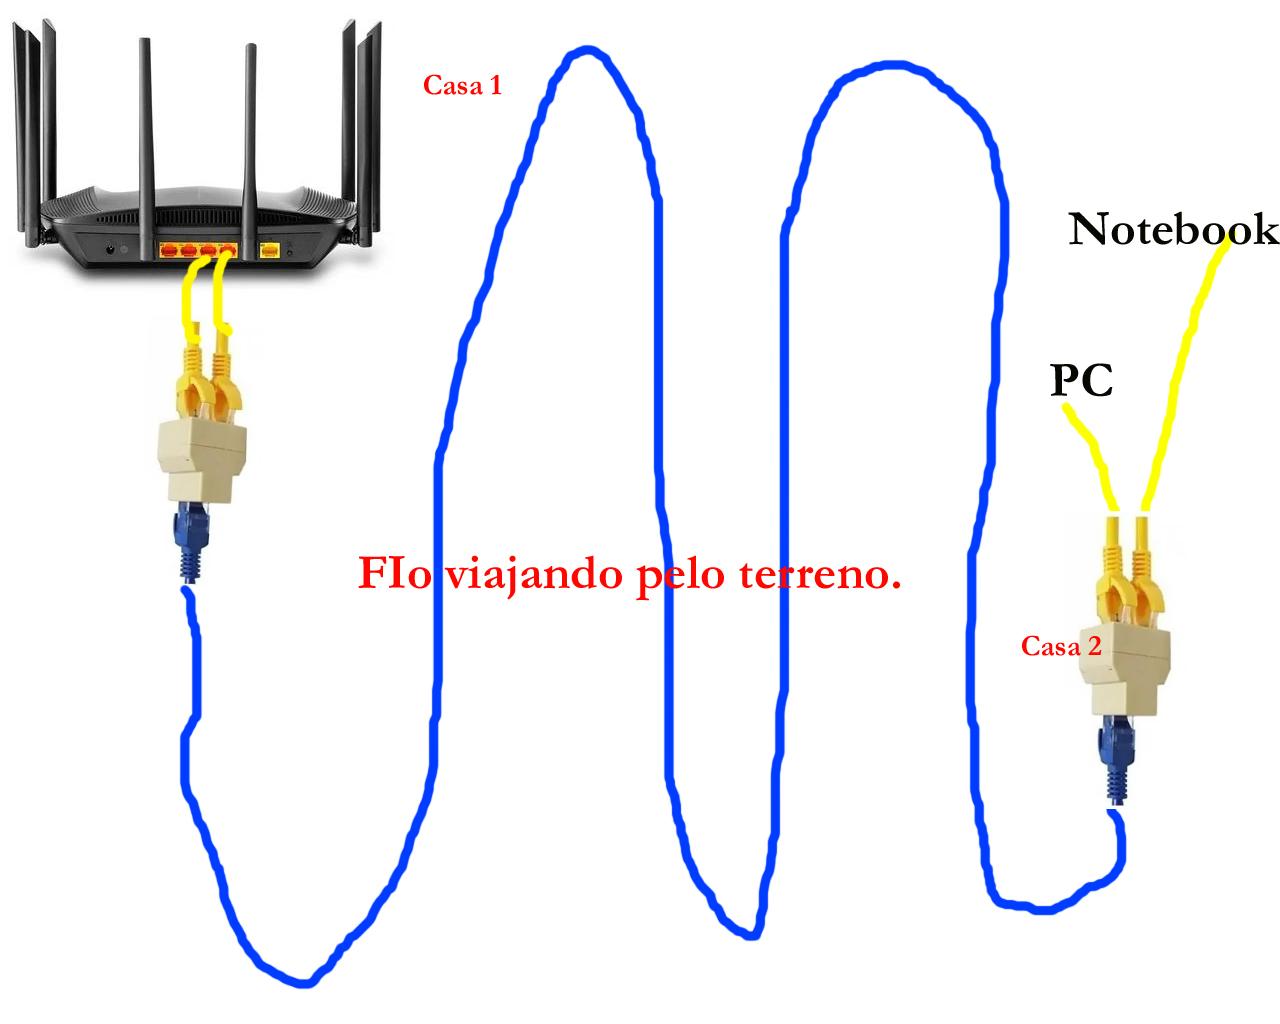 cabo de rede único para conectar 2 aparelhos - Redes e Internet - Clube do  Hardware